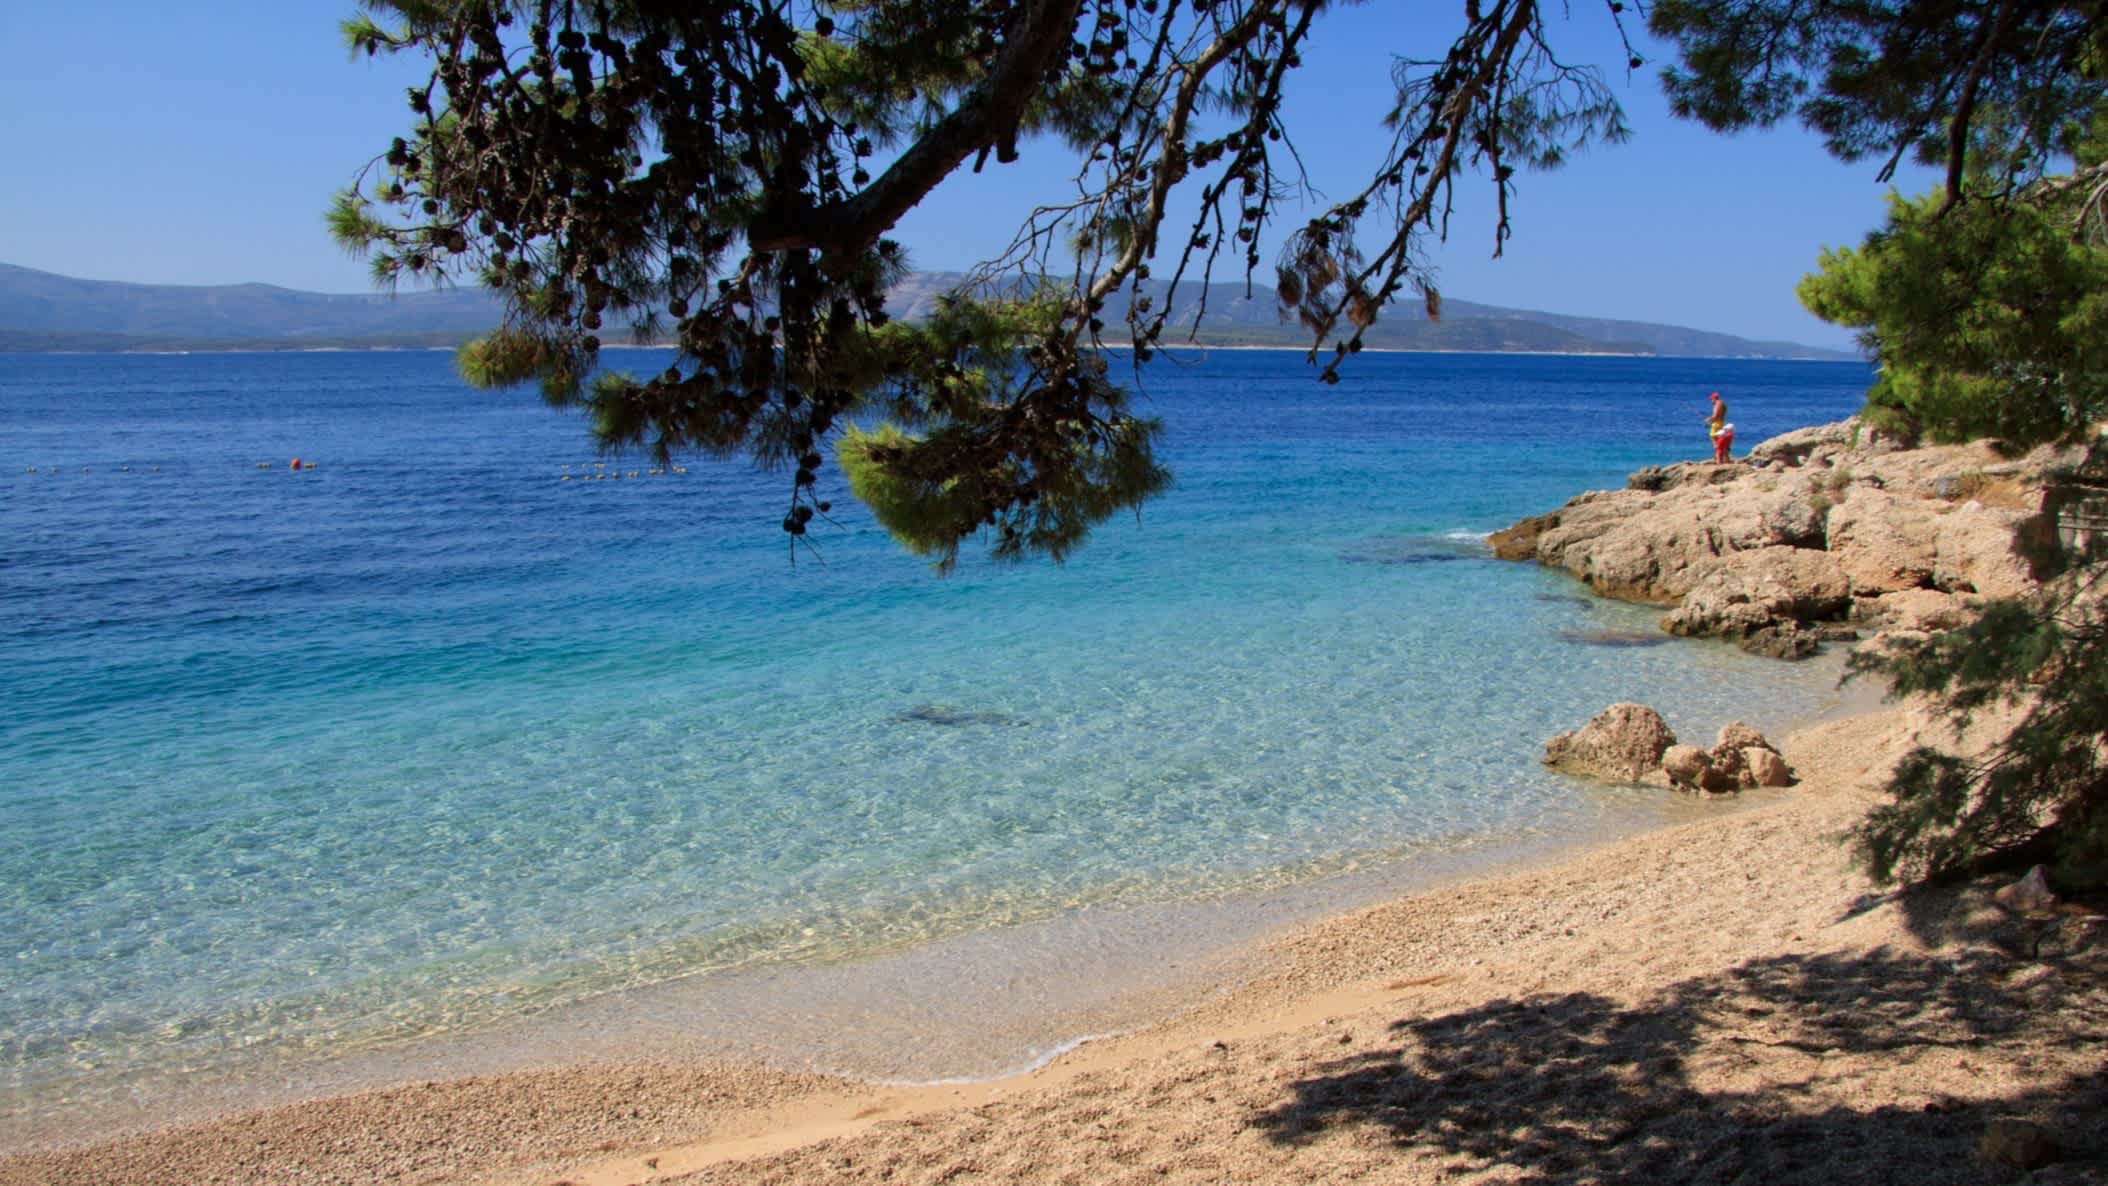 Der Strand Murvica, Insel Brac, Kroatien mit Blick auf das klare Wasser und due Felsen sowie einem Pinienbaum im Bild.